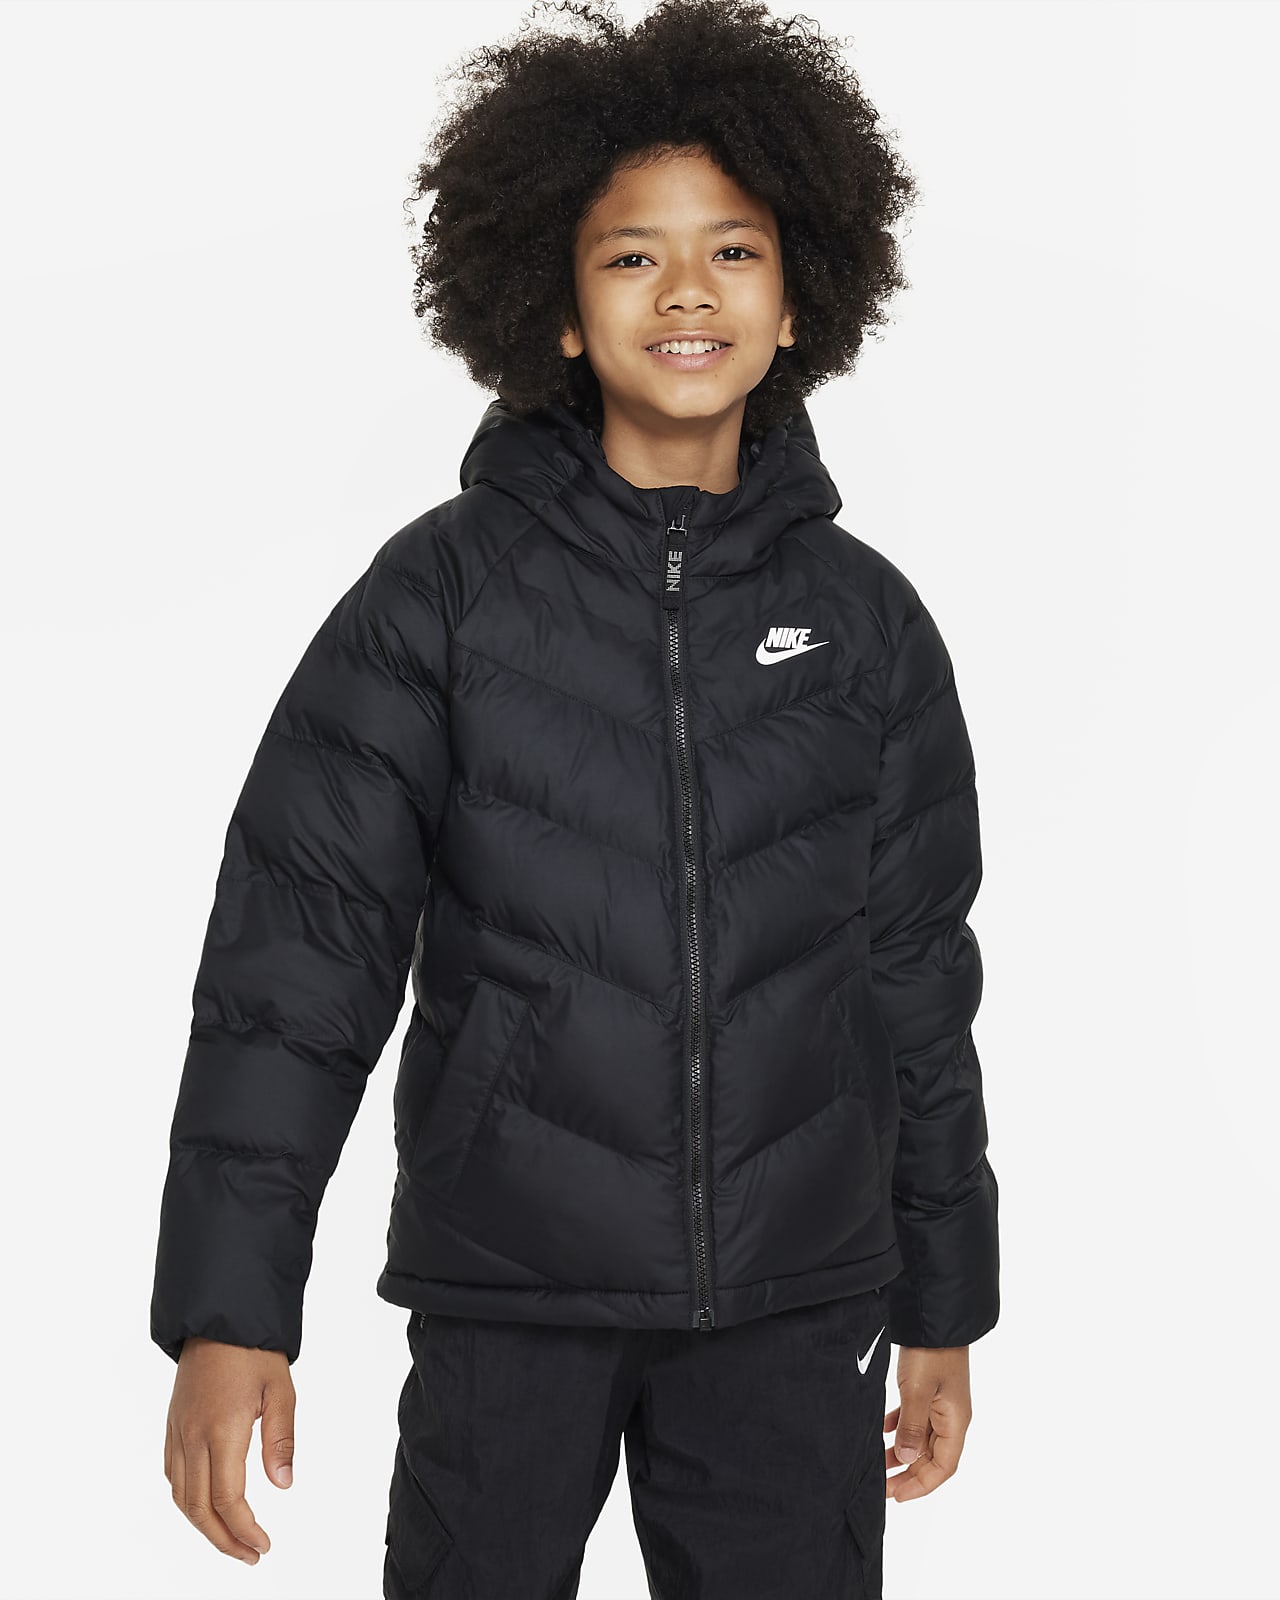 Onkel eller Mister Ære mikrocomputer Nike Sportswear-jakke med hætte og syntetisk fyld til større børn. Nike DK